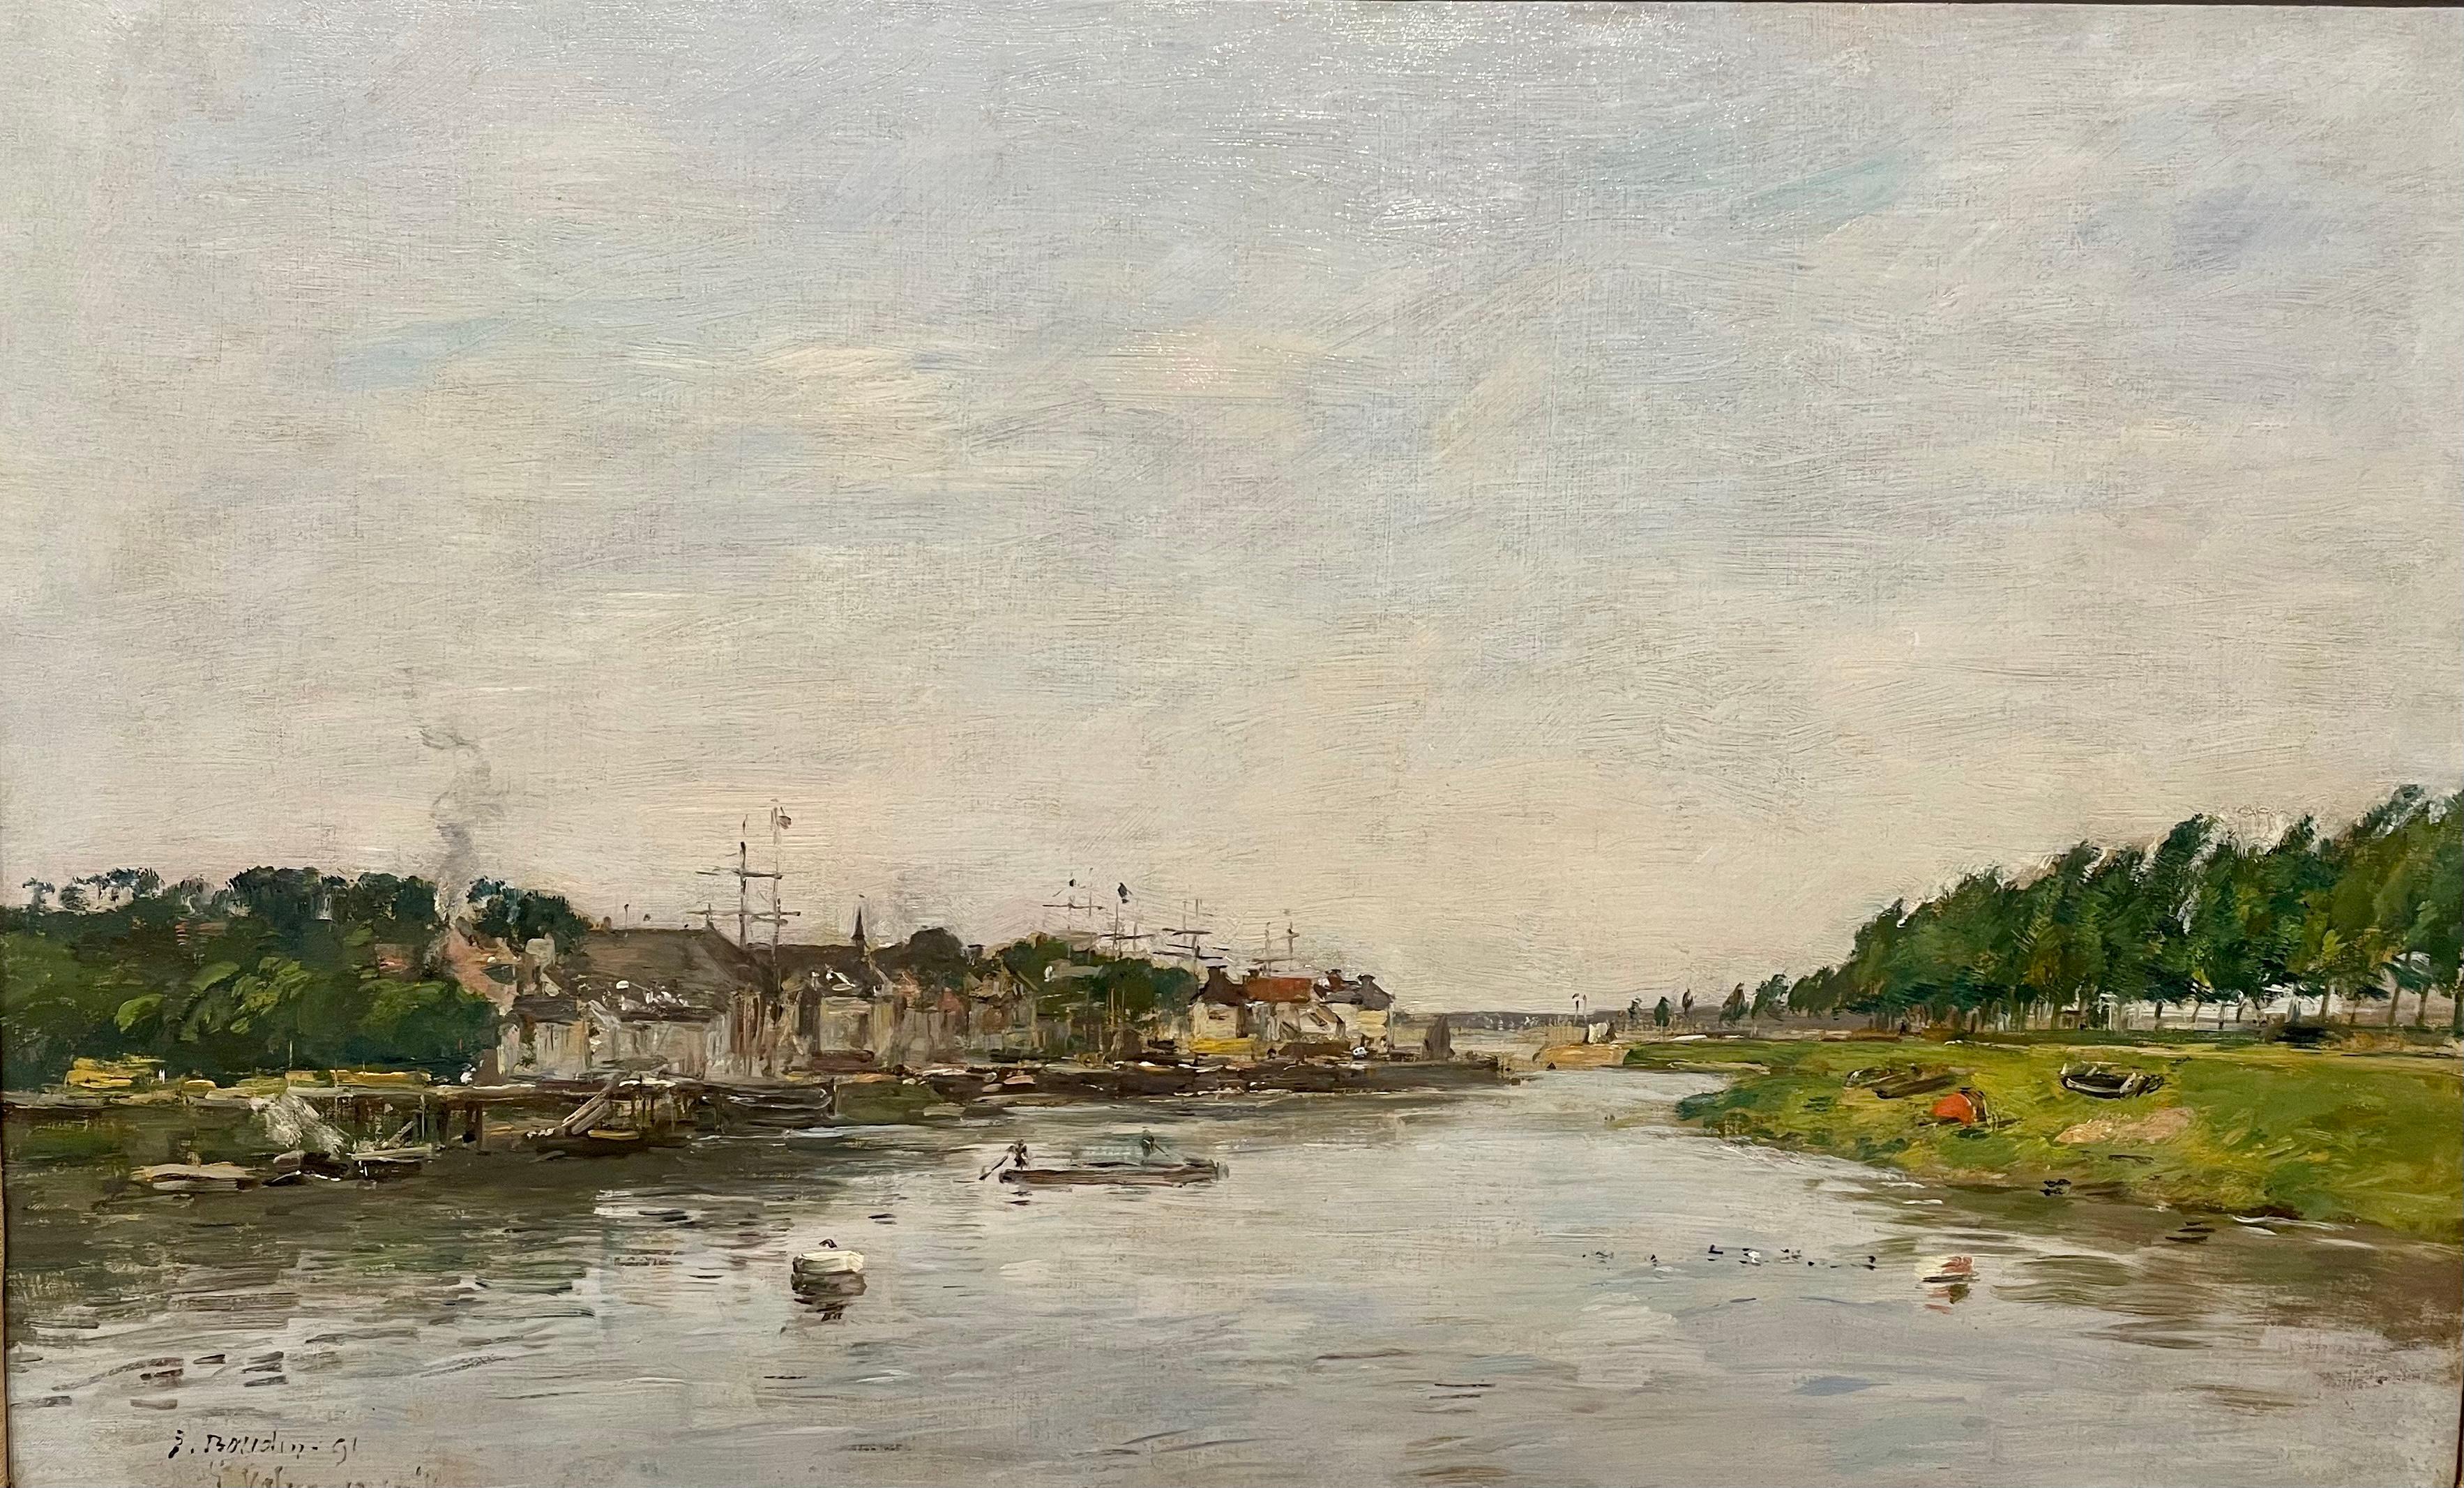 EUGÈNE BOUDIN
(HONFLEUR, 1824 - DEAUVILLE, 1898)
Entrée du port de Saint-Valéry-sur-Somme
1891
Huile sur toile
35 x 57 cm.
Signé 